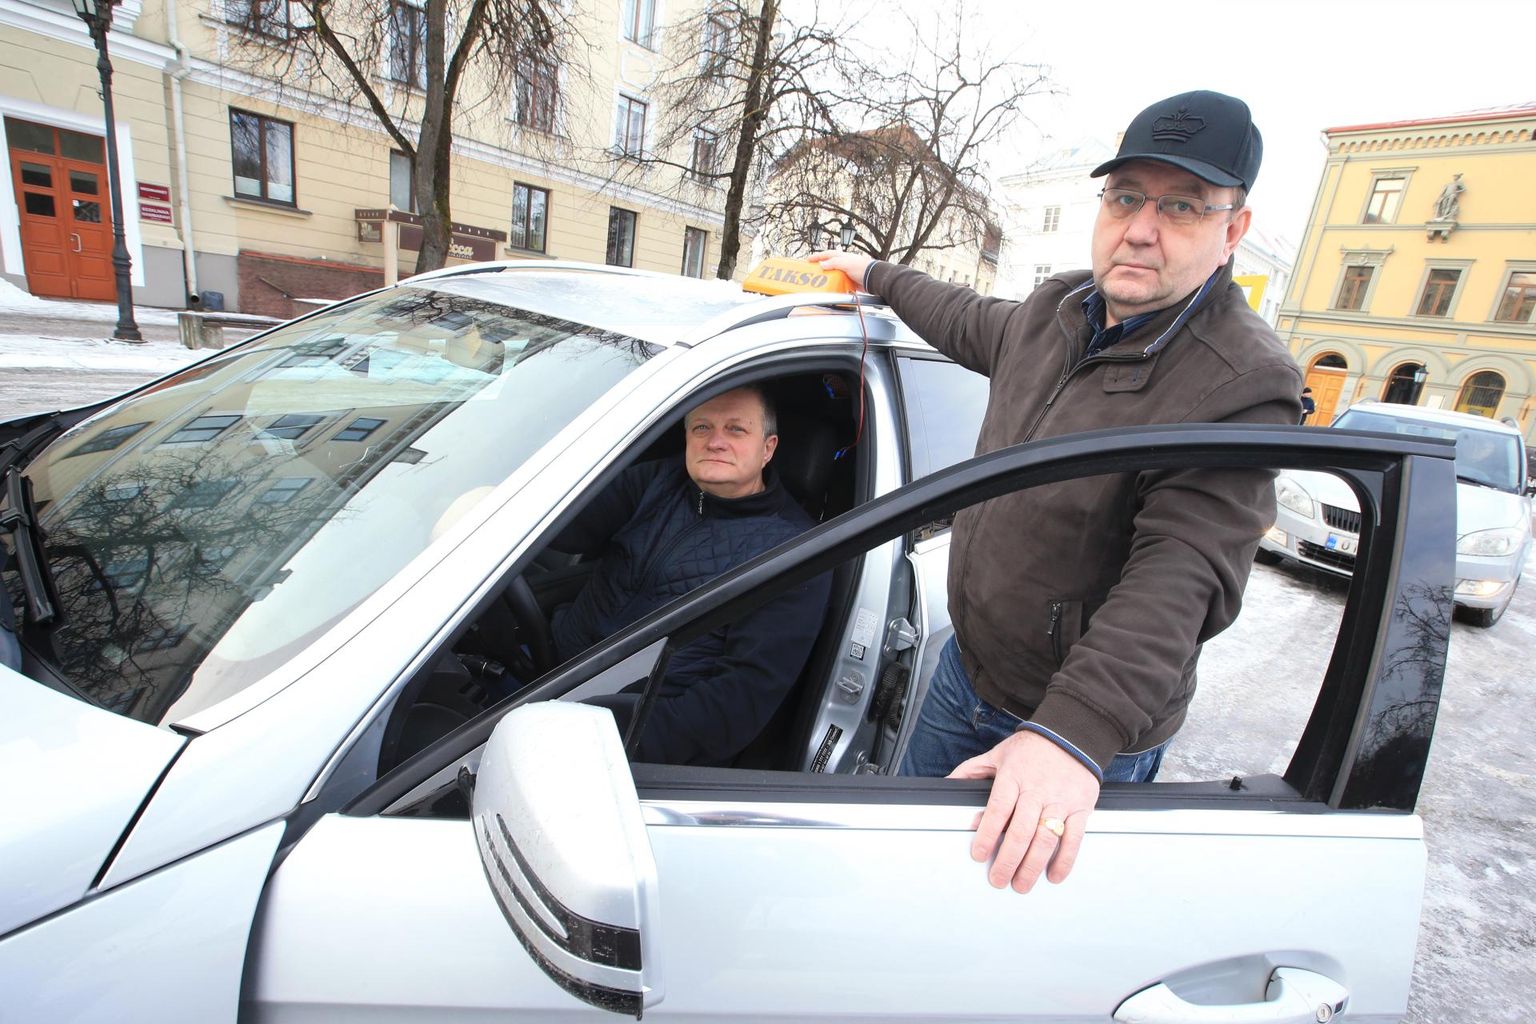 Tartu taksojuhid Erik Rosenthal ja Aivar Nisu (autos) on aastaid tagunud rauda, et erinevatele taksodele kehtestataks ühtsed reeglid. Seni tulemust pole.